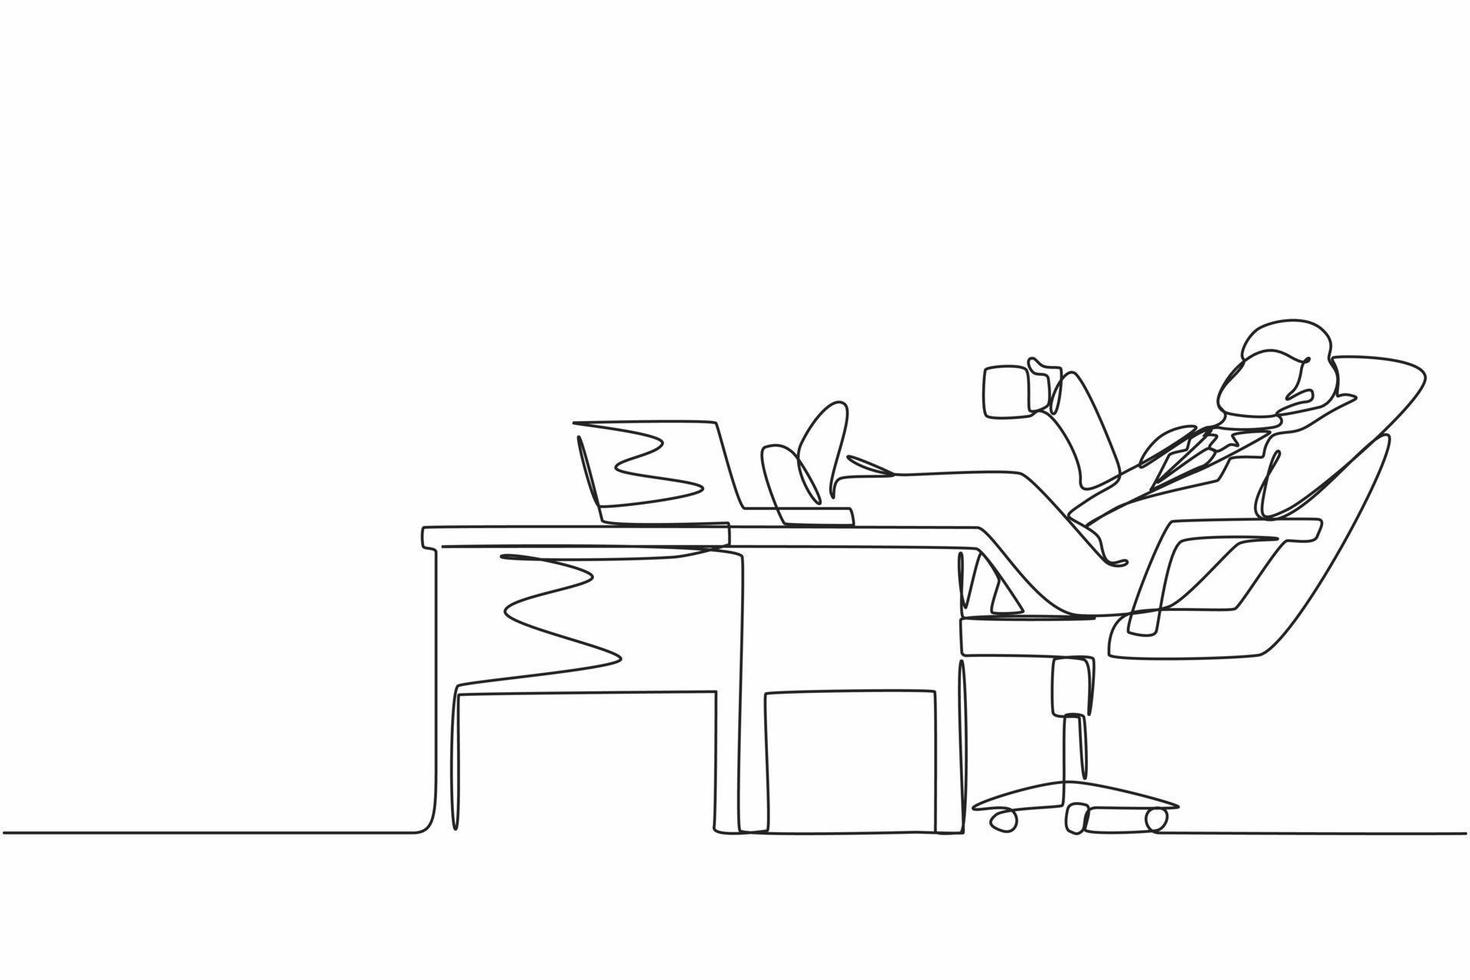 Single One Line Drawing Junger Geschäftsmann arbeitet entspannt am Schreibtisch und trinkt eine Tasse Kaffee. flaches design des mitarbeitercharakters, der mit laptop-computer arbeitet. kontinuierliche linie zeichnen grafische vektorillustration vektor